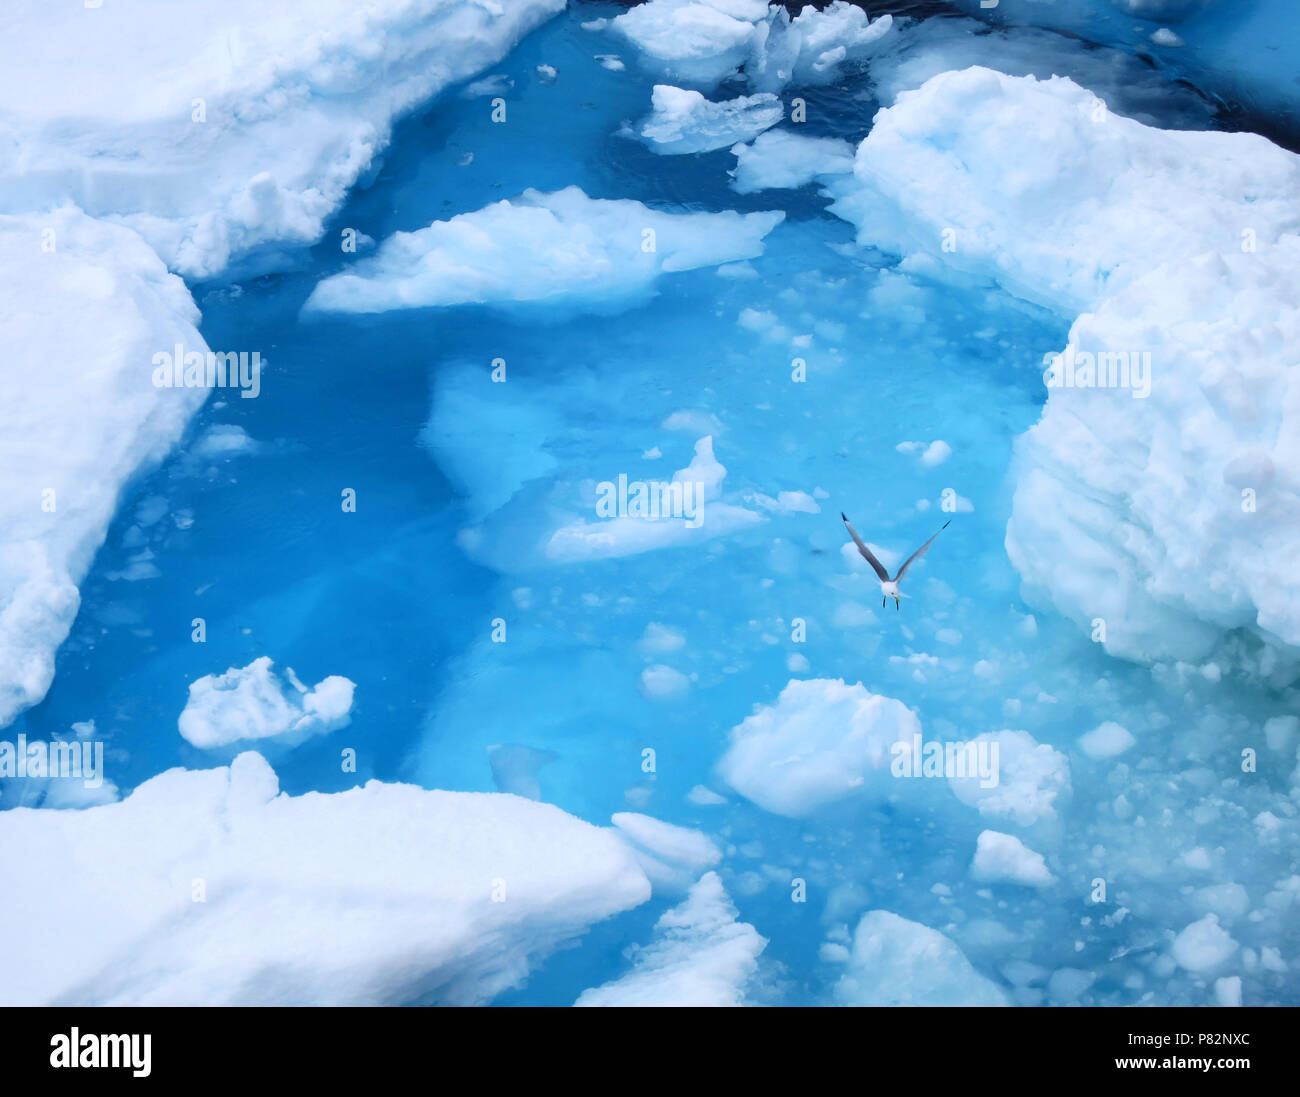 Drieteenmeeuw ijsblauw vliegend boven l'eau, la mouette tridactyle volant au-dessus de l'eau bleu glace Banque D'Images